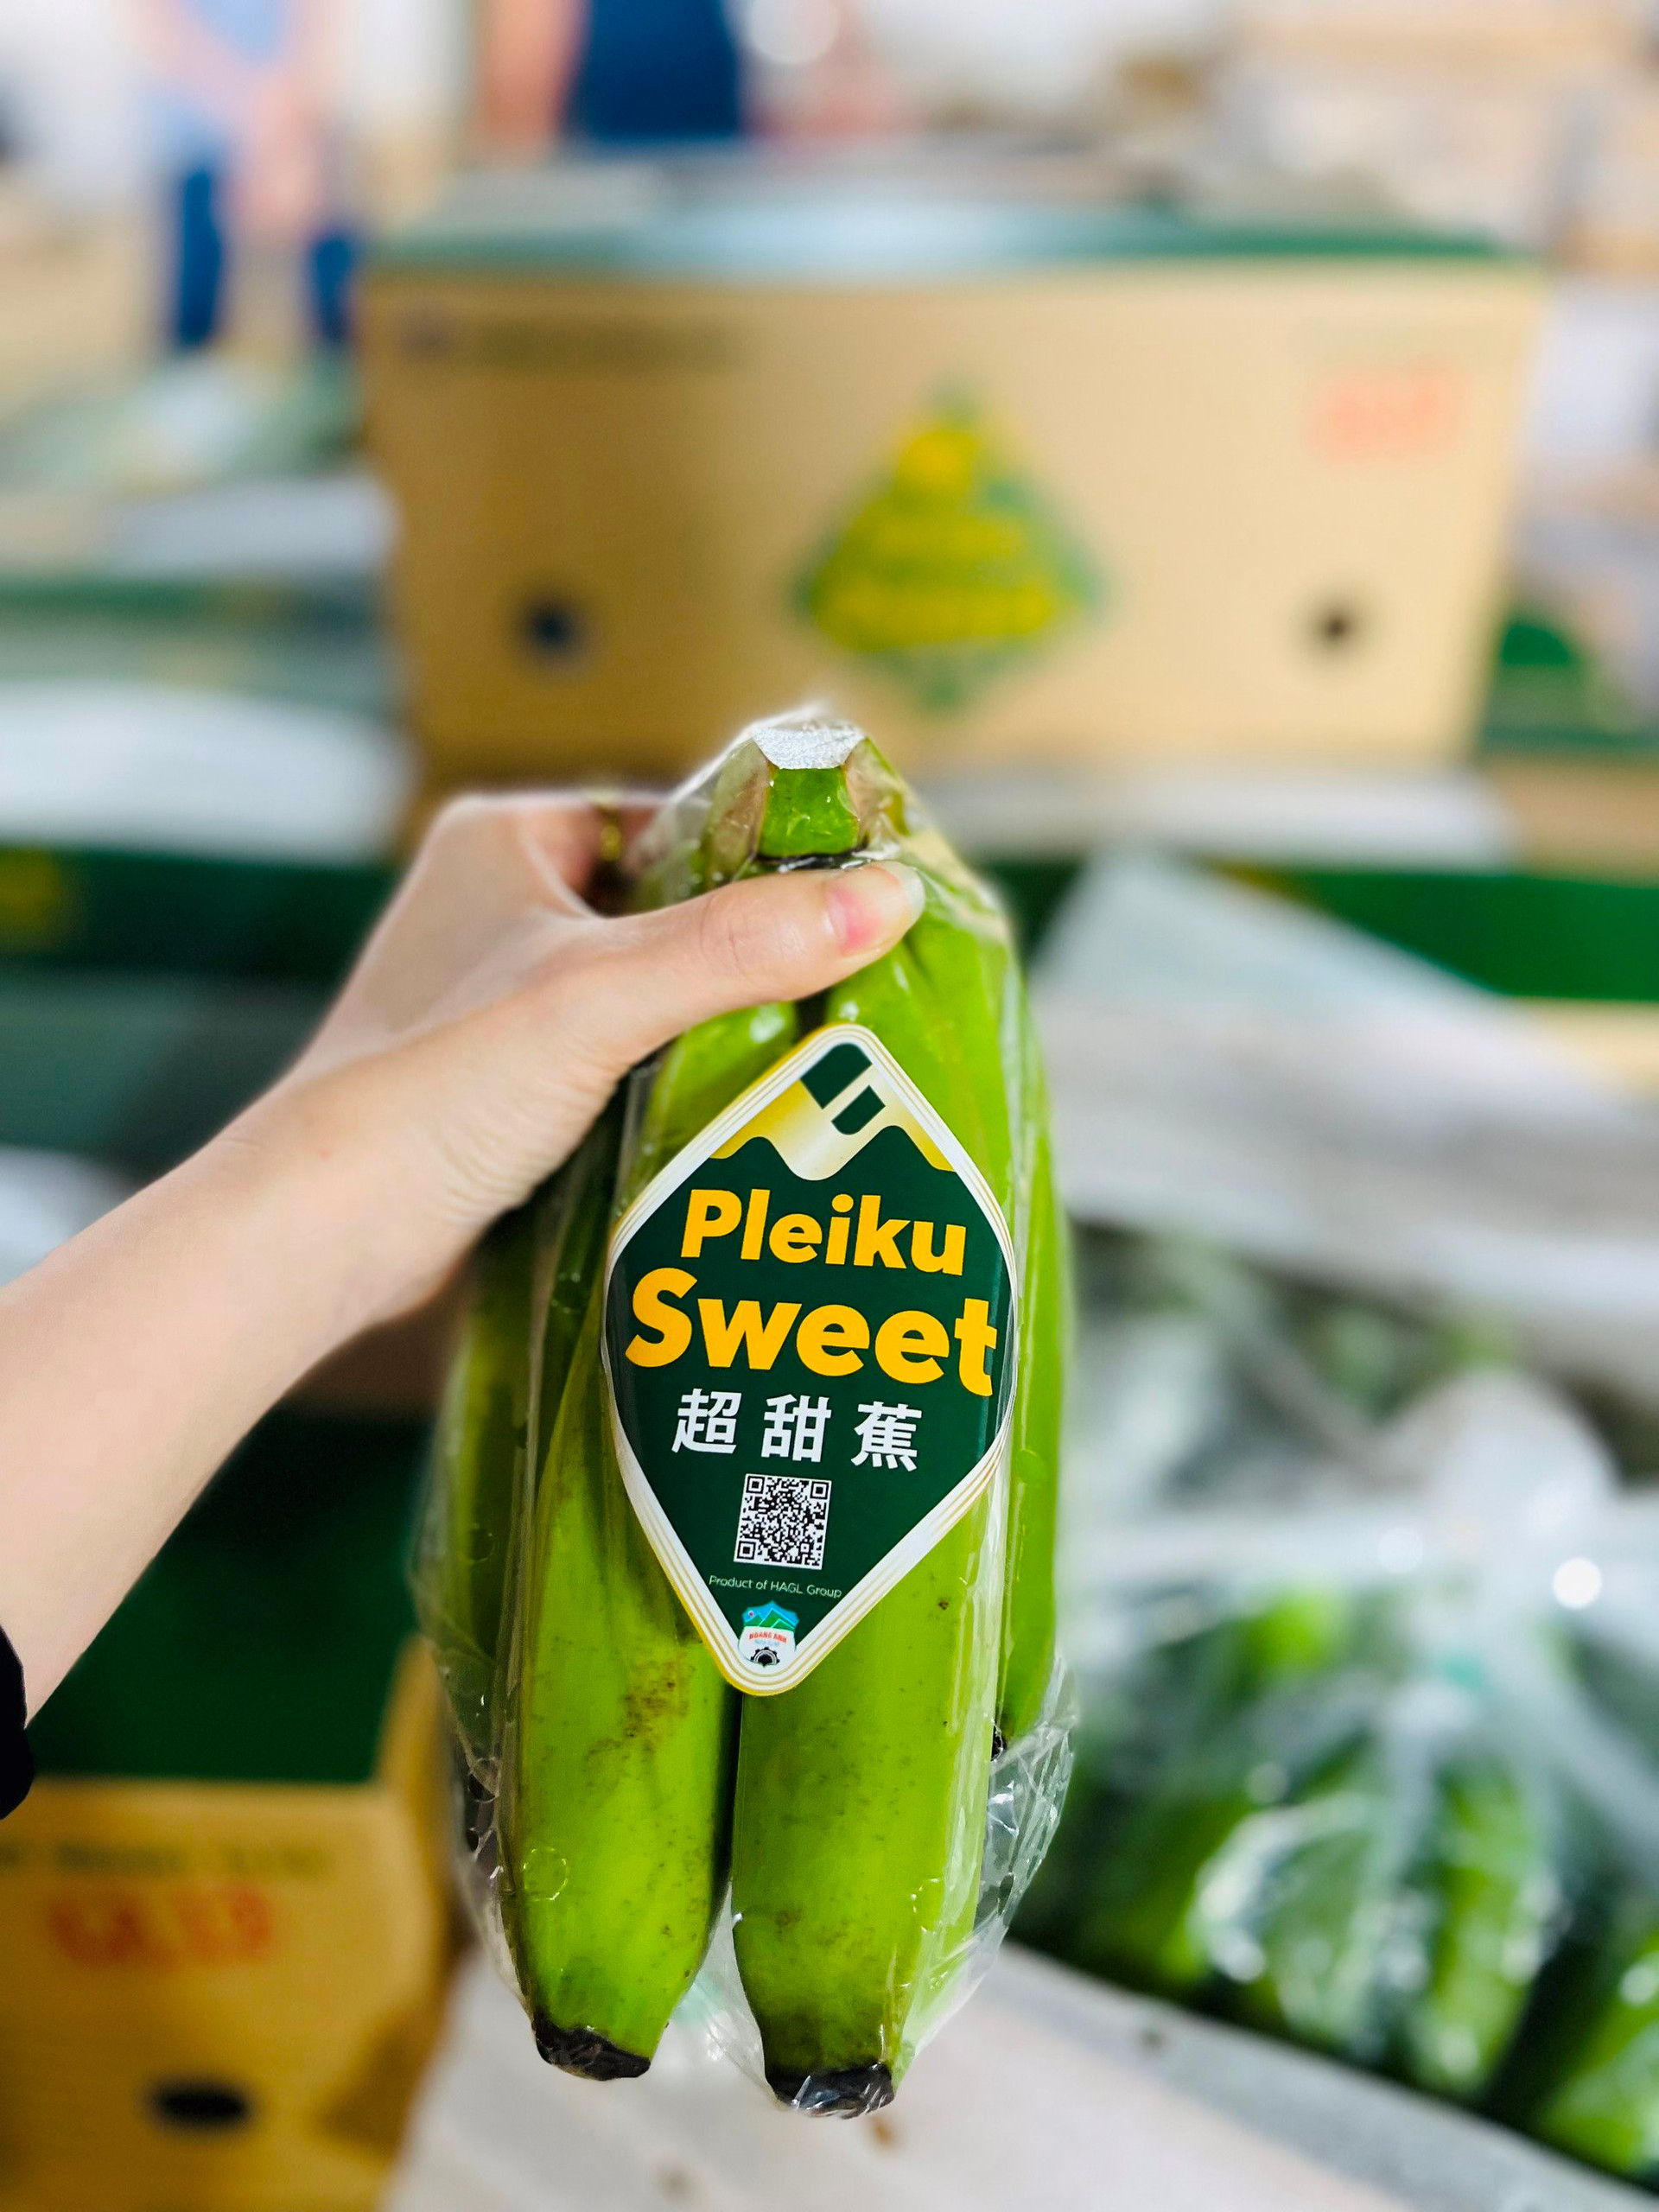 Hoàng Anh Gia Lai chi thưởng 600-800 triệu đồng cho nhân viên theo chế độ đãi ngộ mới, xây dựng thương hiệu riêng Pleiku Sweet cho chuối - Ảnh 6.